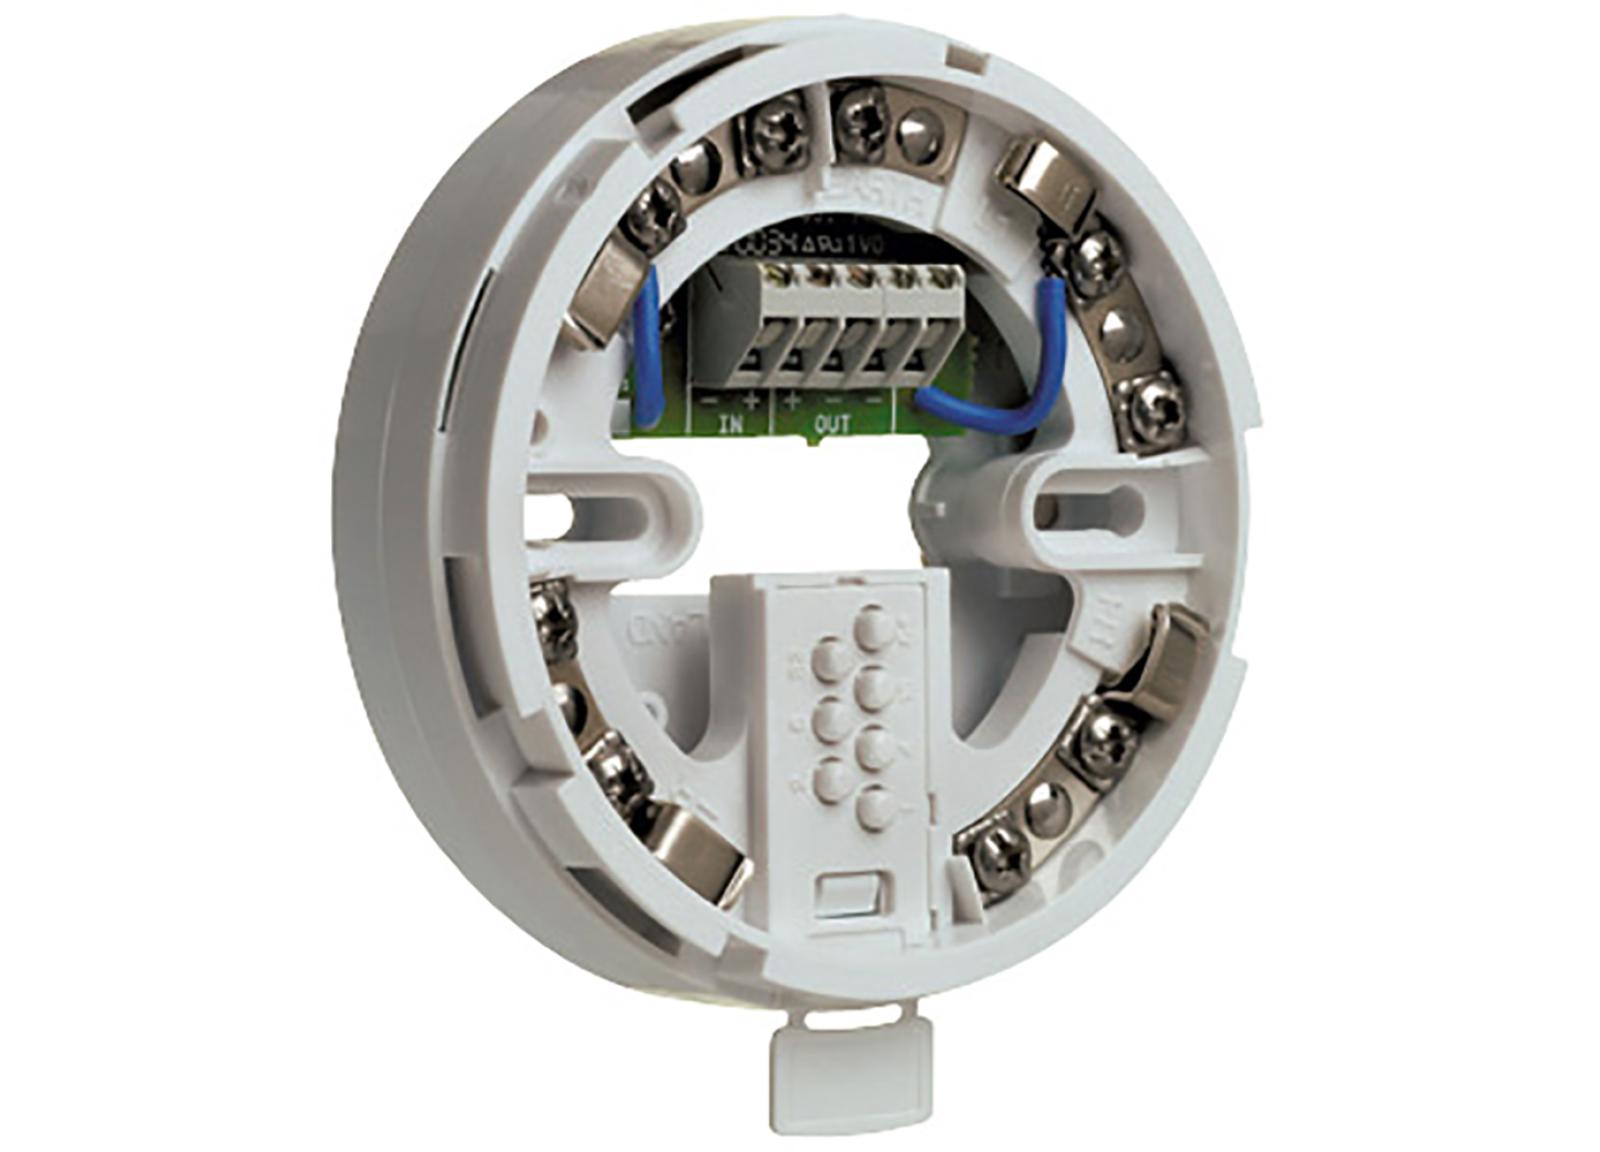 Socle avec isolateur intégré pour détecteur automatique Type 1 Adressable